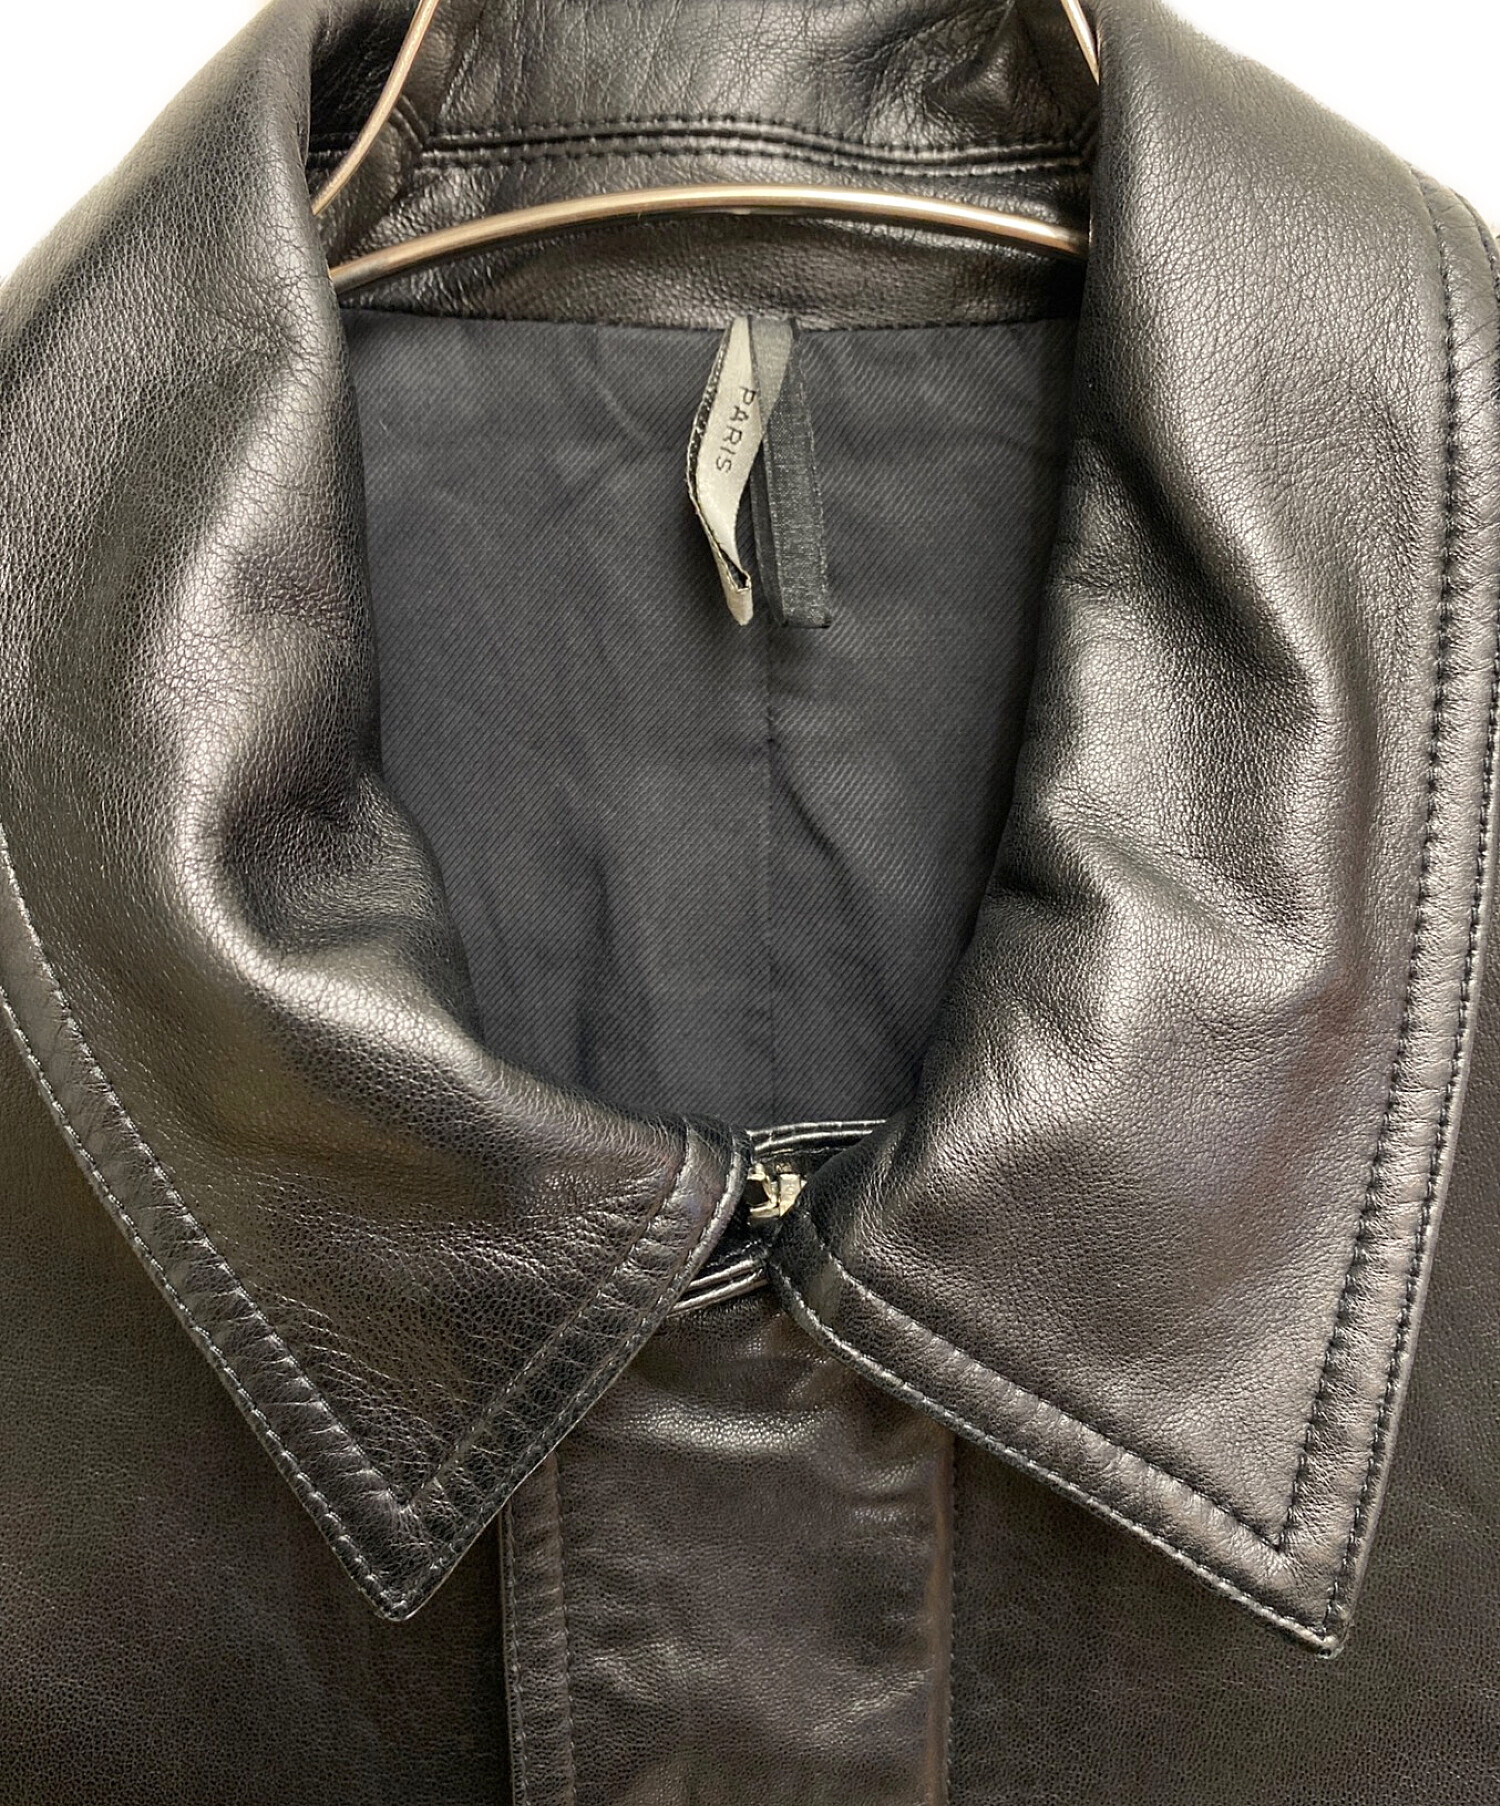 Dior Homme (ディオール オム) ラムレザージャケット ブラック サイズ:44